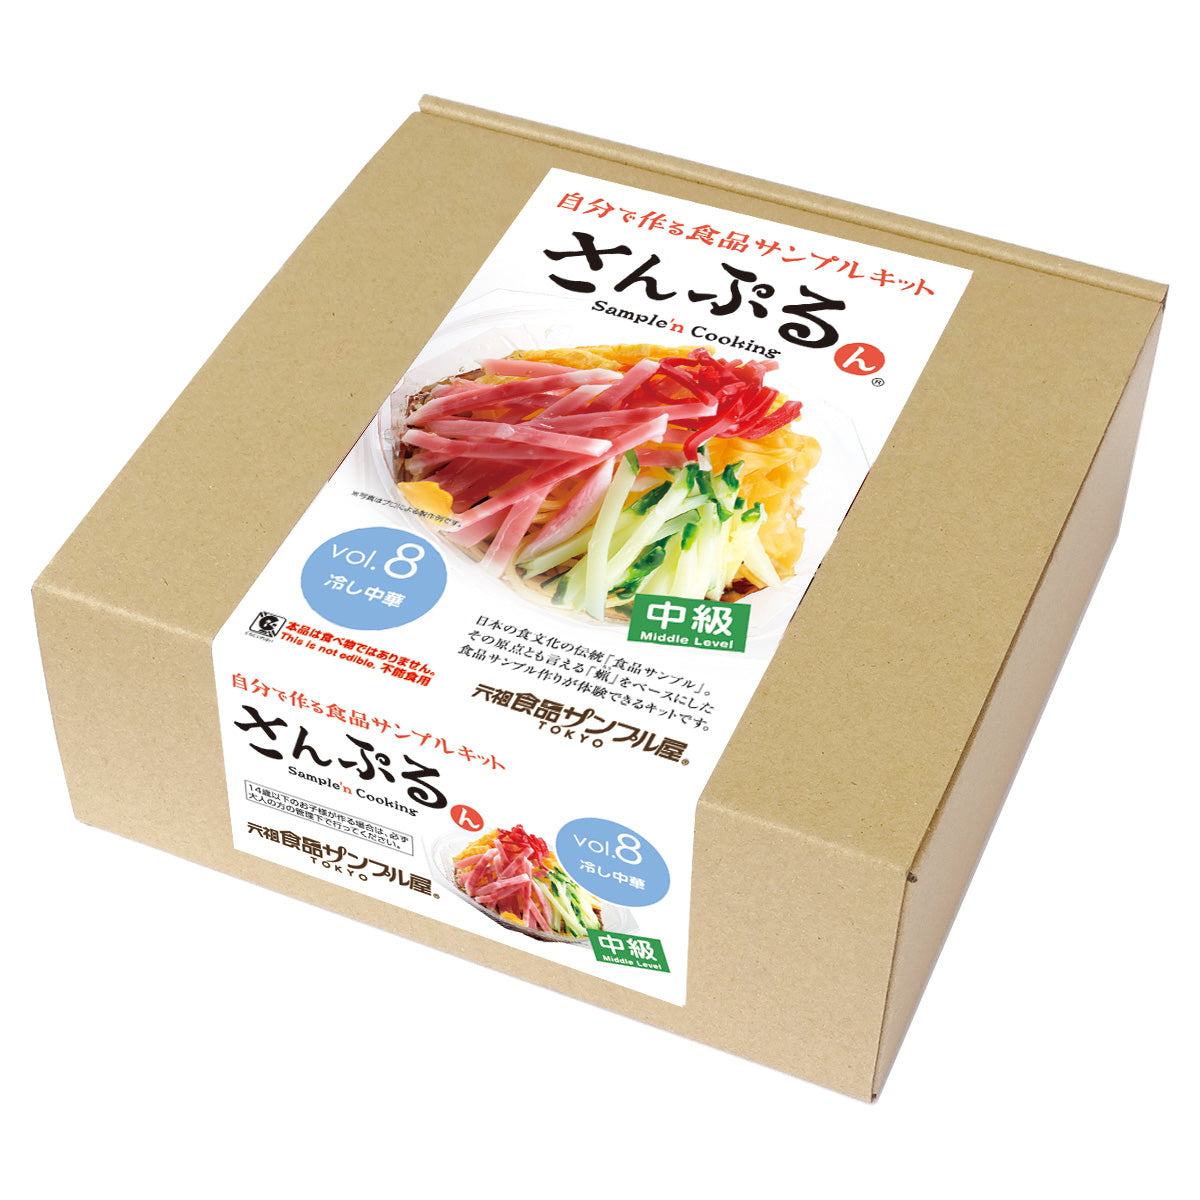 自分で作る食品サンプル製作キット｜さんぷるん Vol.8「冷やし中華」 – 元祖食品サンプル屋